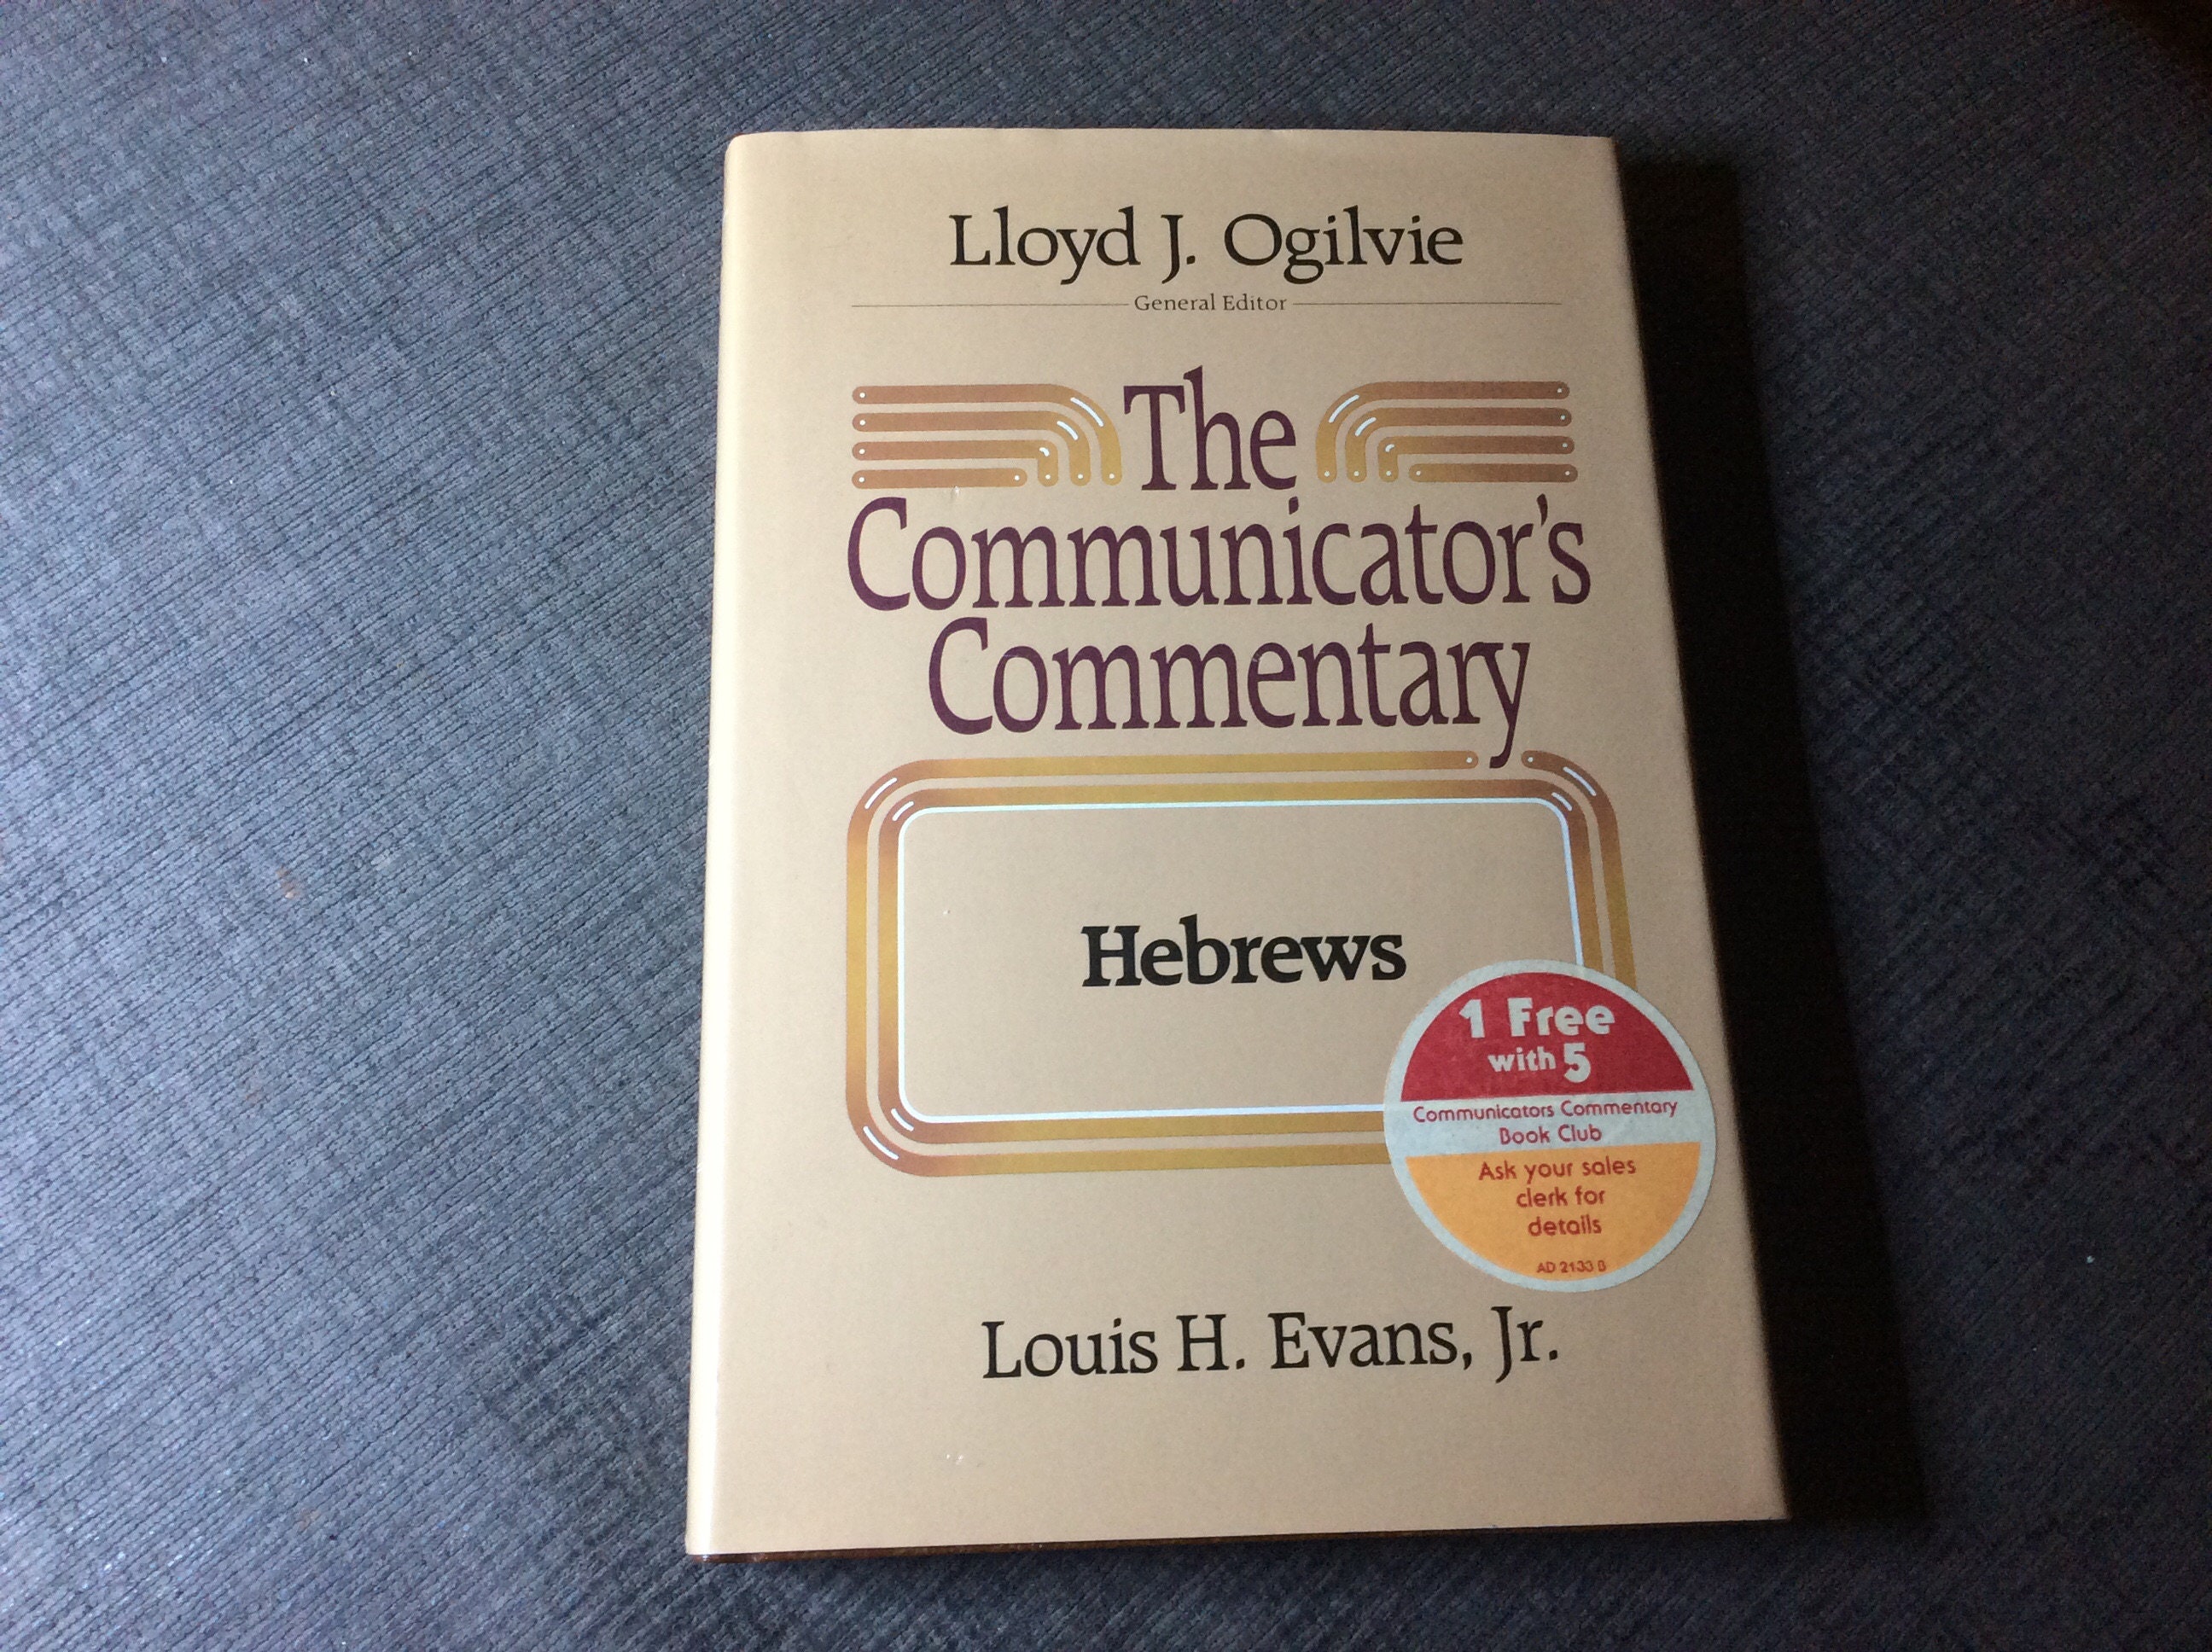 The Communicators Commentary hebrews Louis H. Evans Jr. 